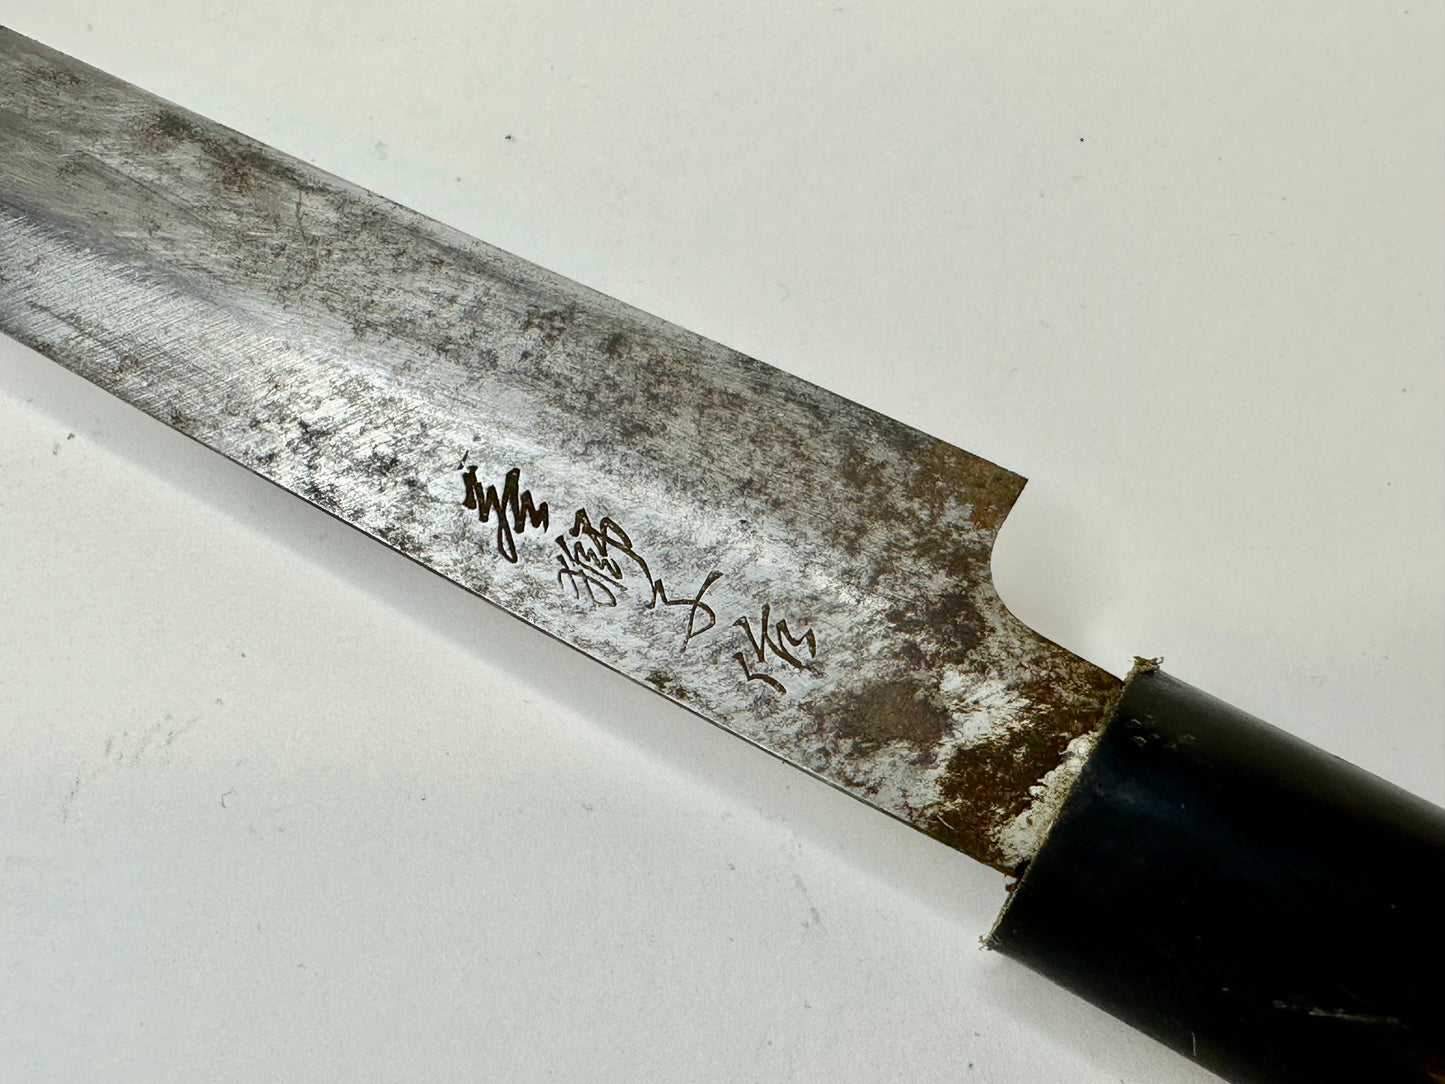 Vintage Japanese Signed Chef's Sashimi Sushi 9" Knife Laminated Samurai Steel